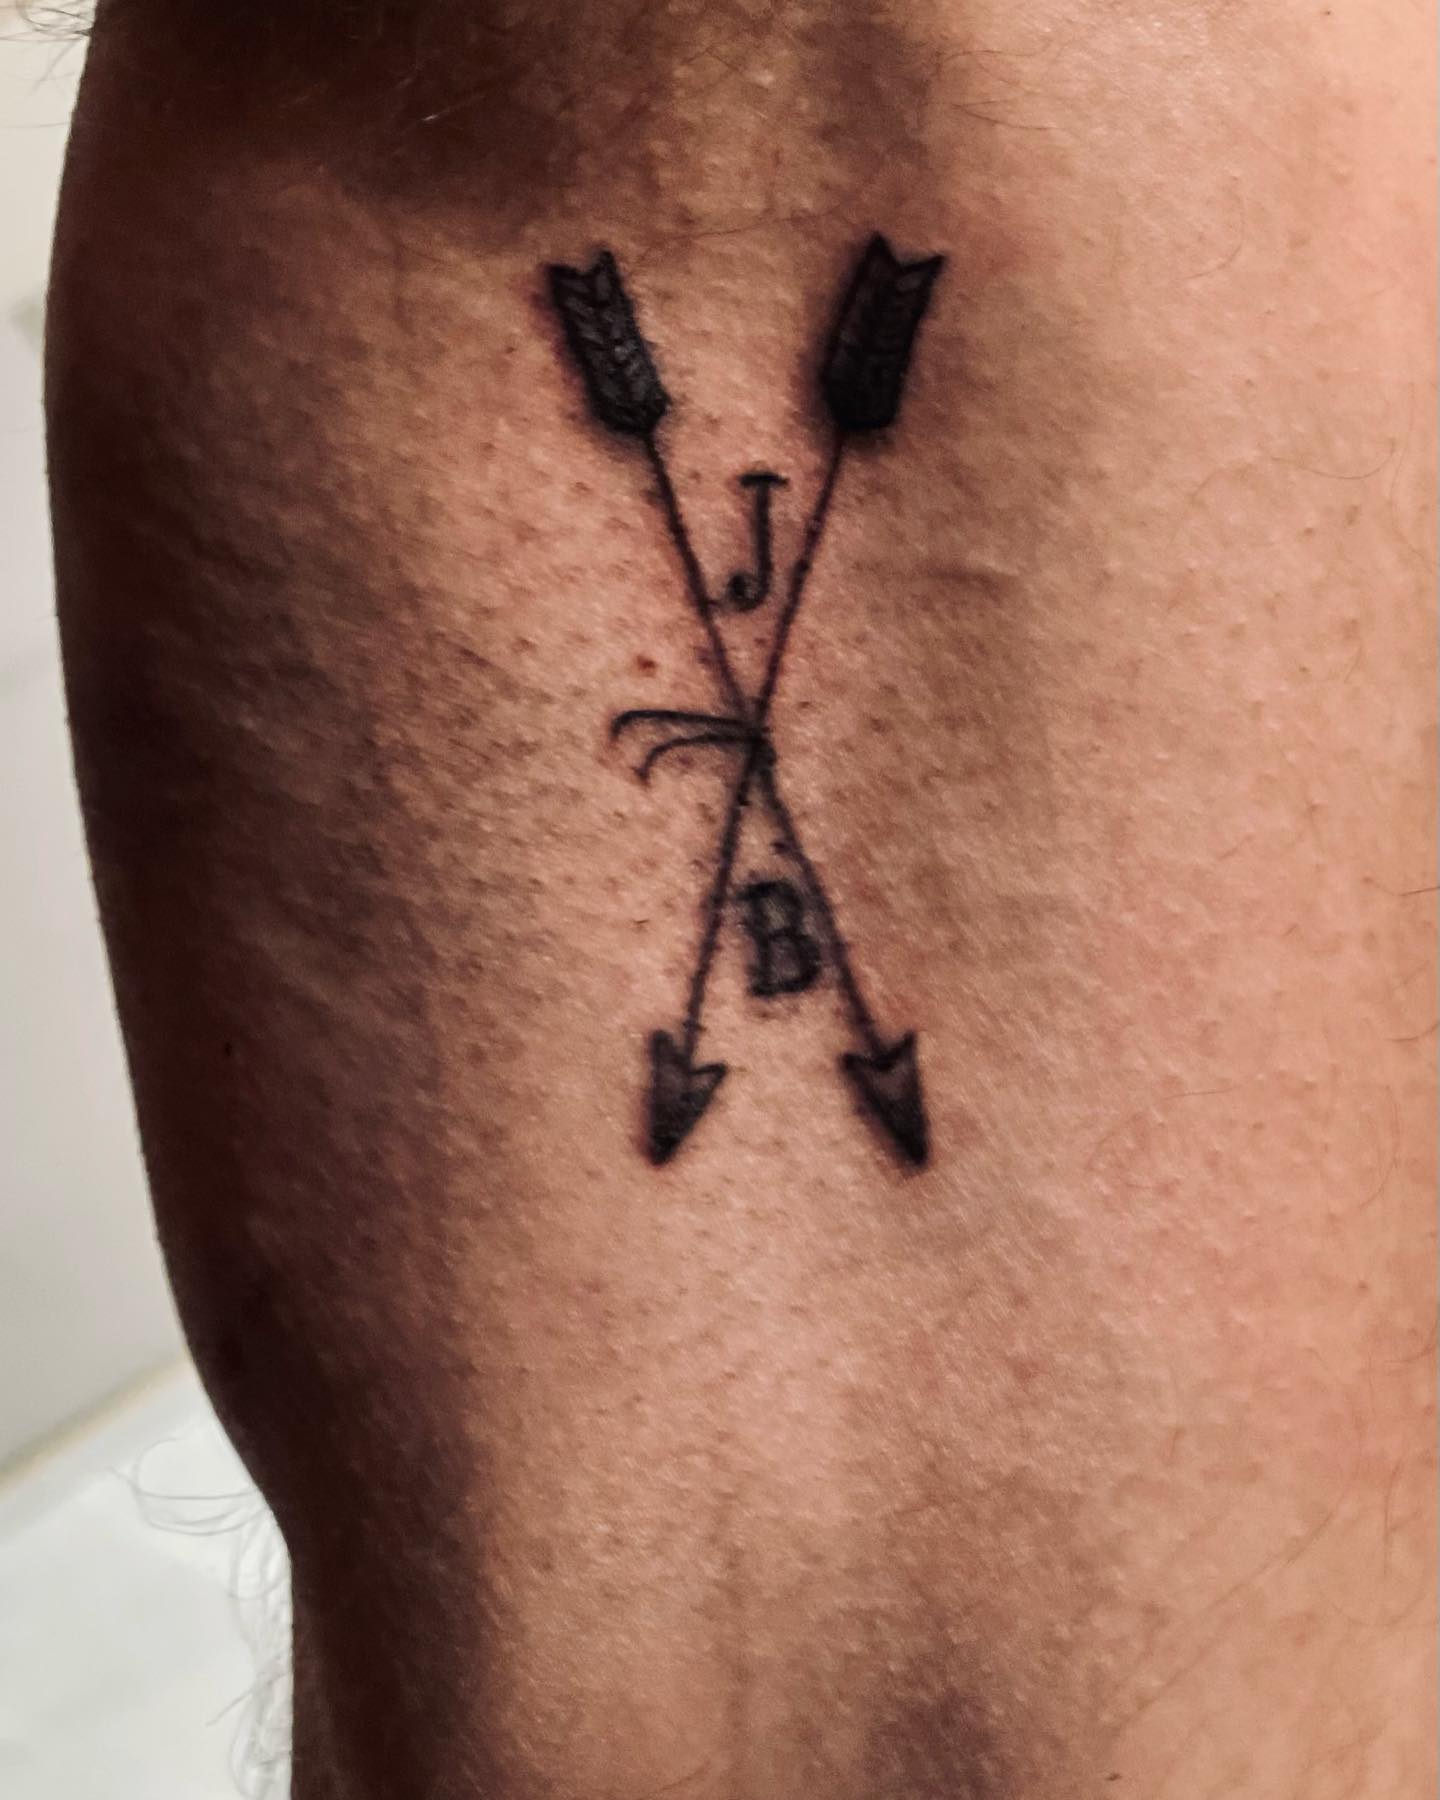 Fine line arrow tattoo on the inner forearm.